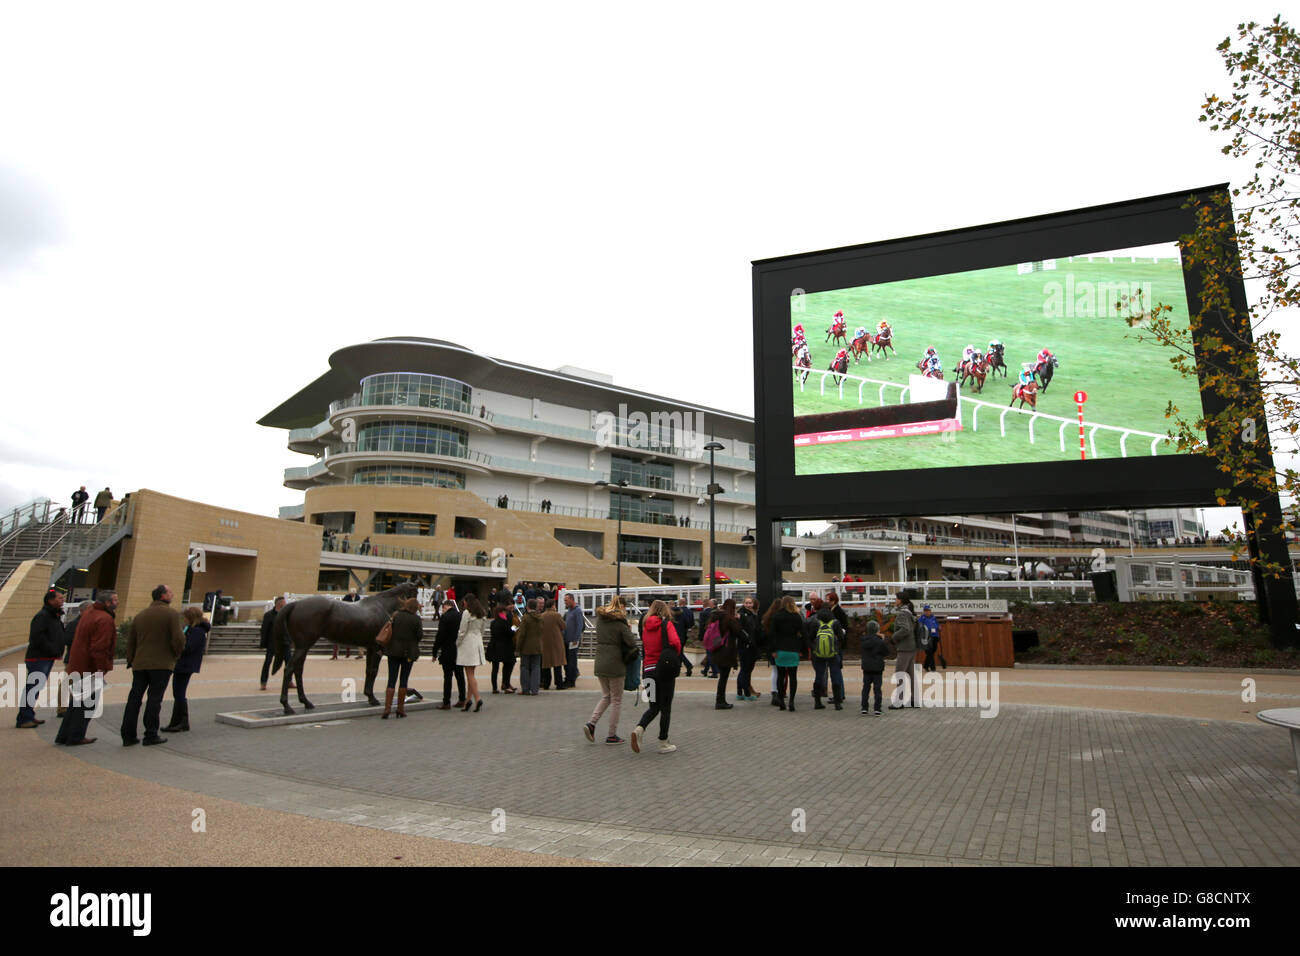 Pferderennen - The Showcase - Tag Zwei - Cheltenham Racecourse. Eine allgemeine Ansicht der riesigen Leinwand auf der Cheltenham Rennbahn Stockfoto